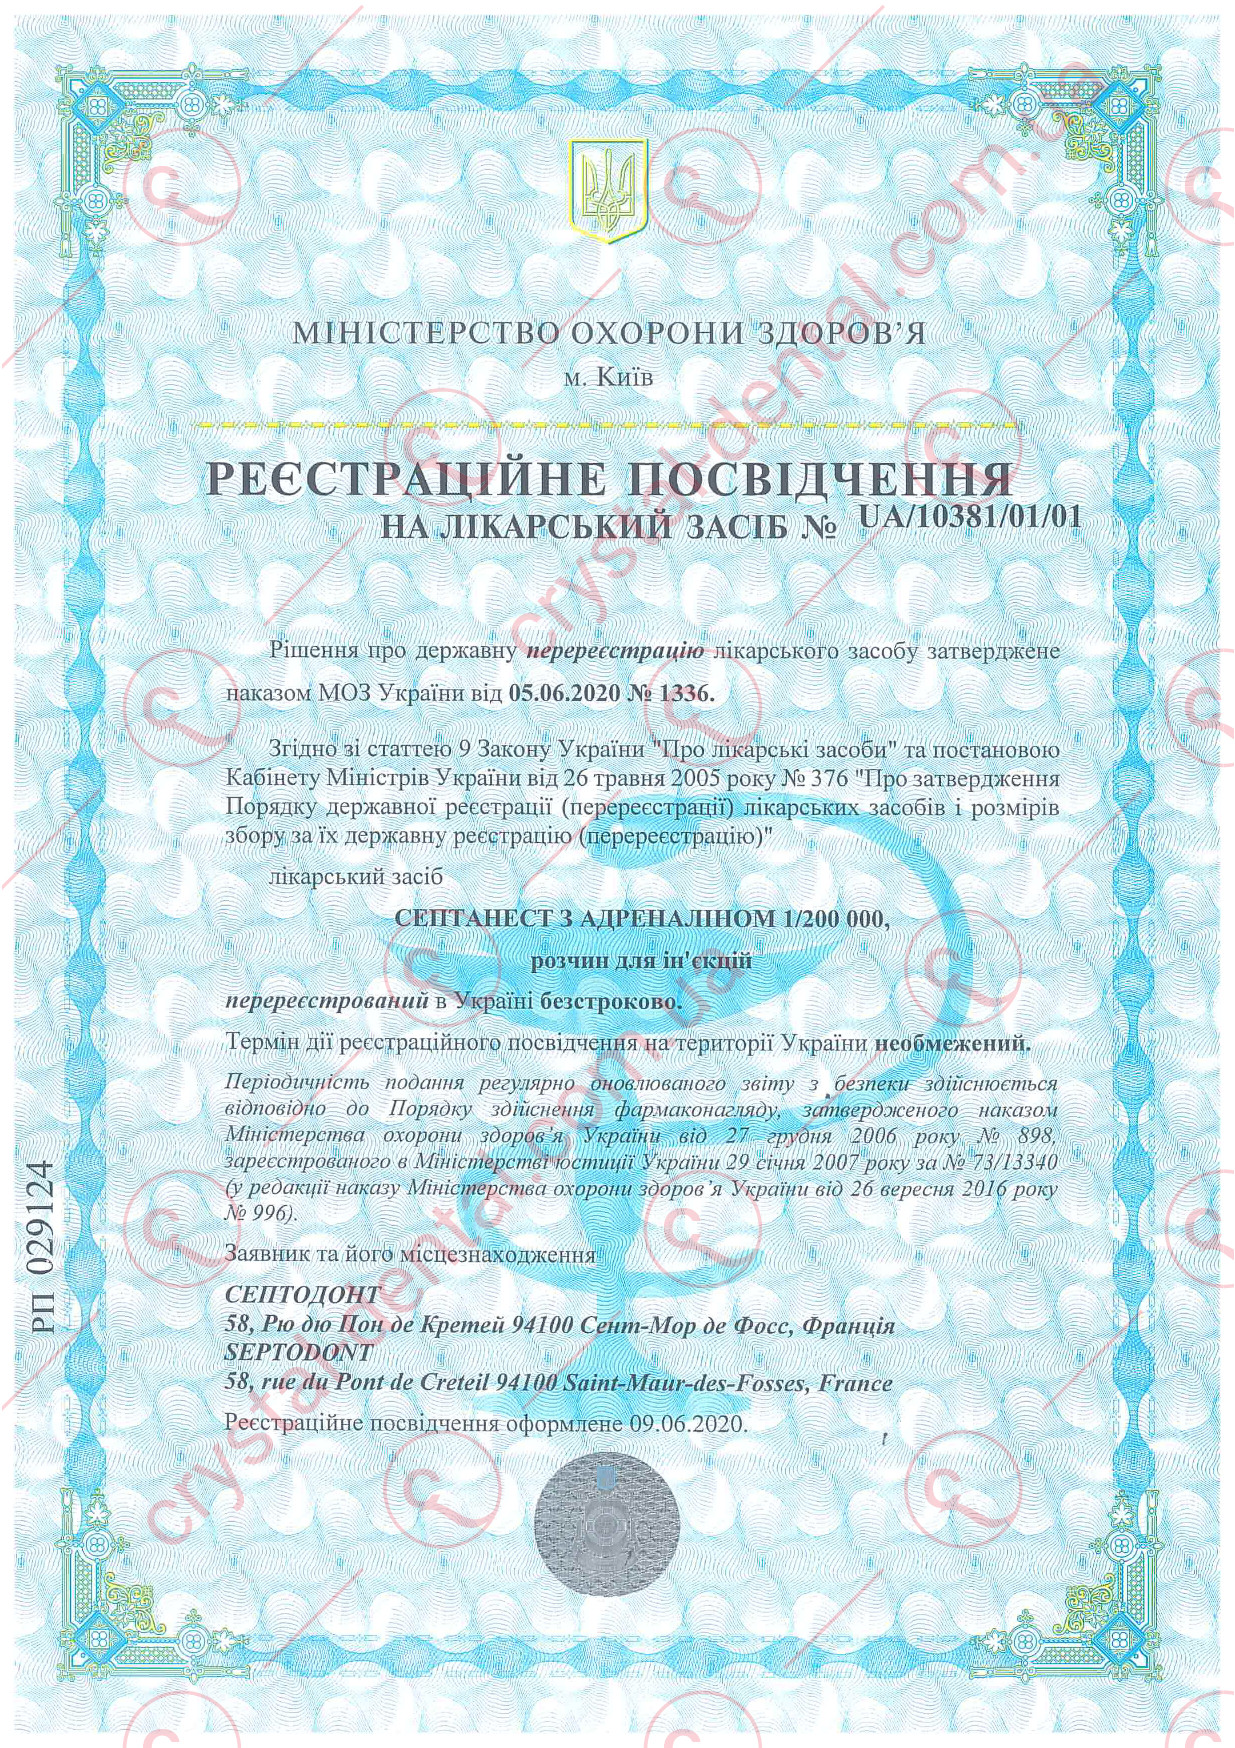 Сертифікат Septanest 1/200 000